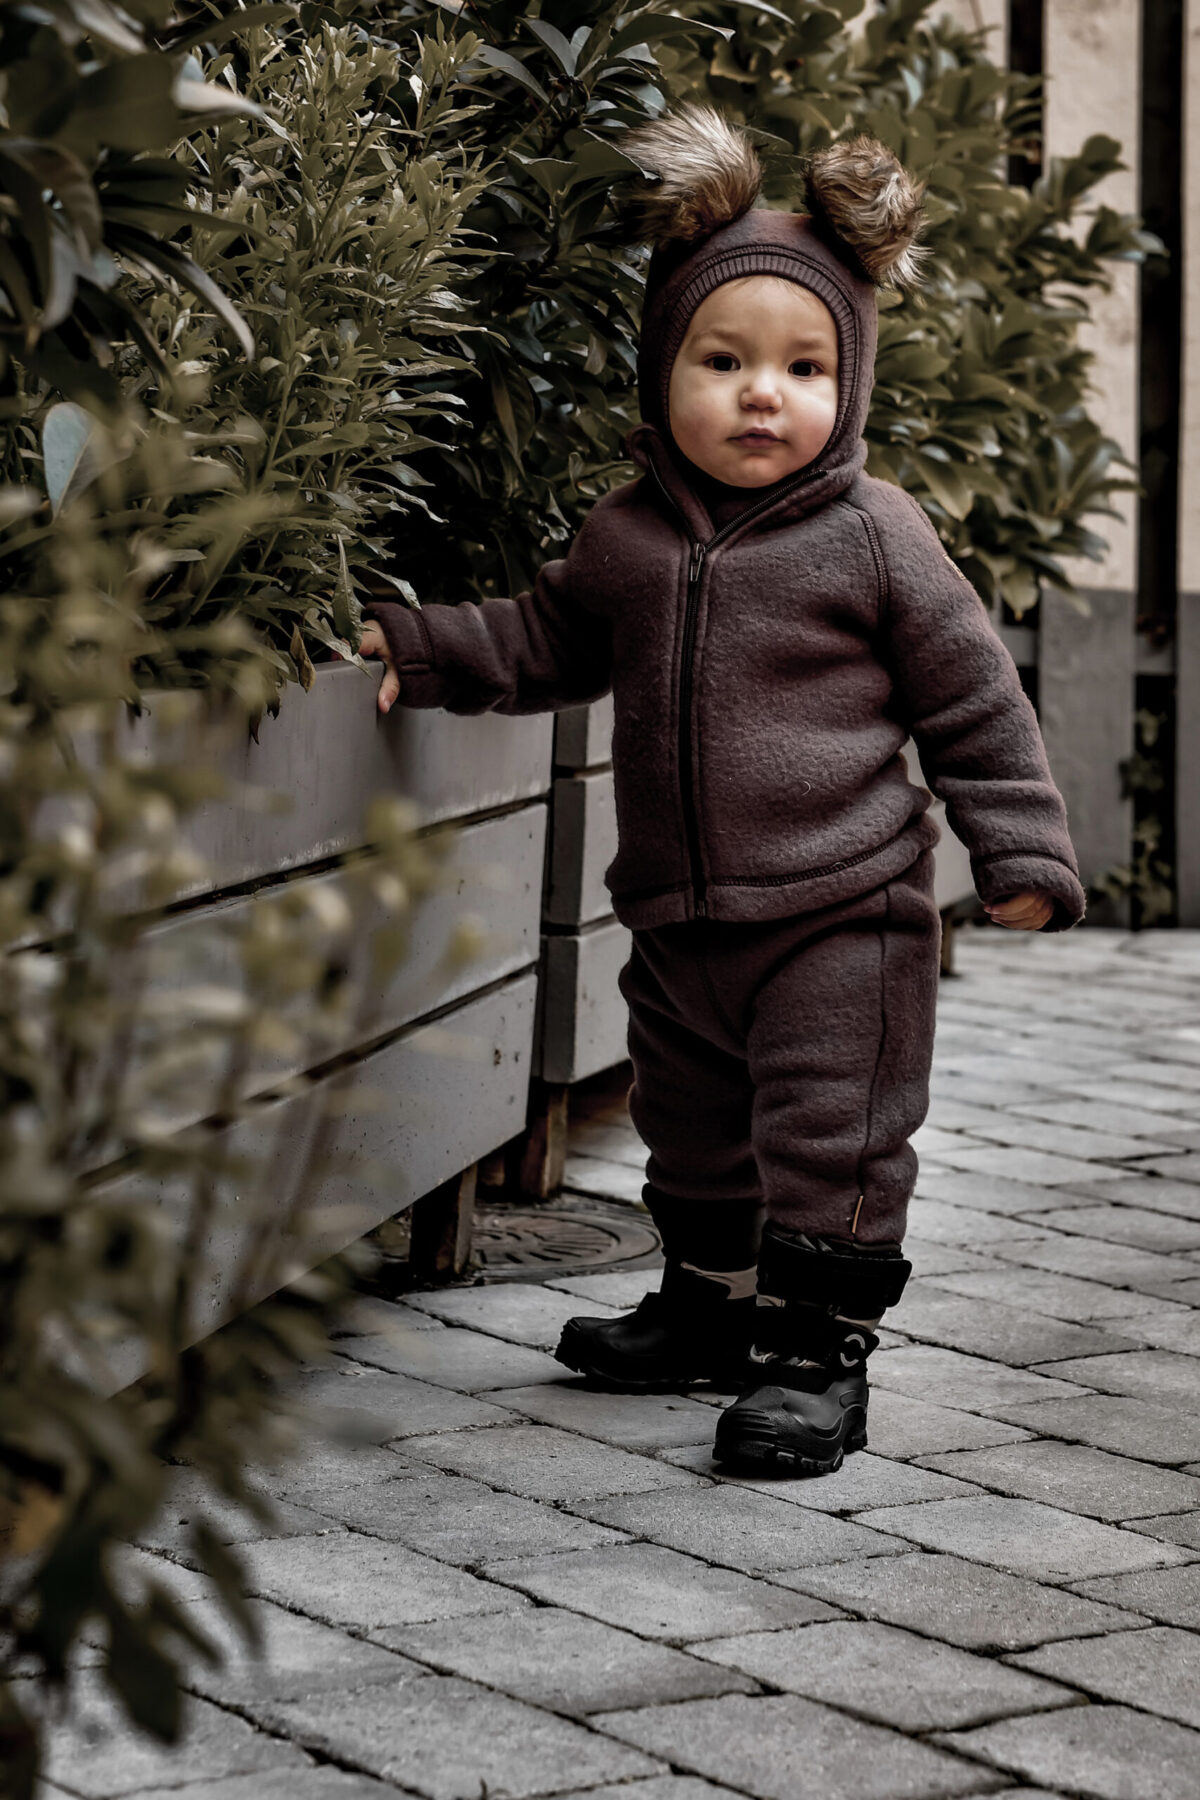 Mikk-Line Meriinovillasest fliisist püksid, Rubber Mikk-Line - HellyK - Kvaliteetsed lasteriided, villariided, barefoot jalatsid